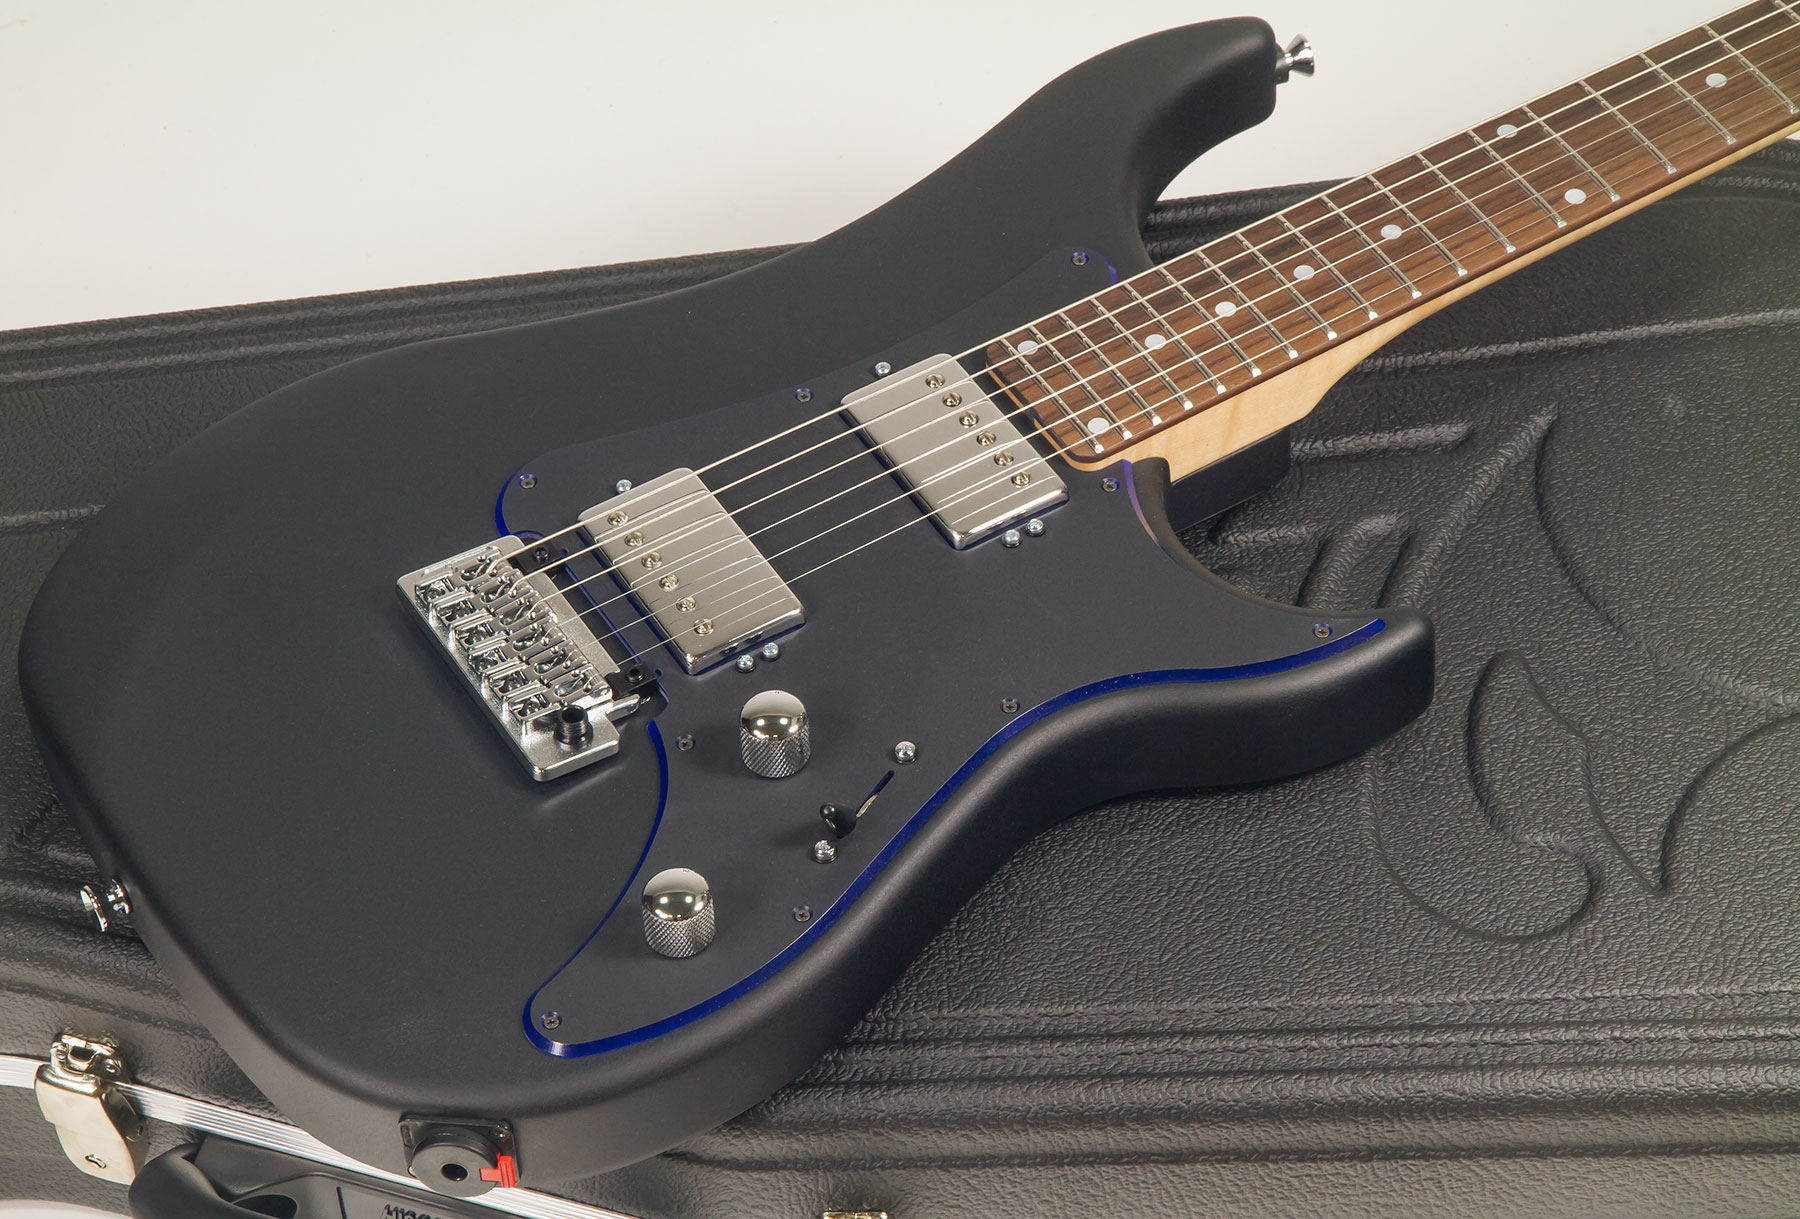 Vigier Excalibur Indus Hh Trem Rw - Textured Black - Guitarra eléctrica de doble corte - Variation 1